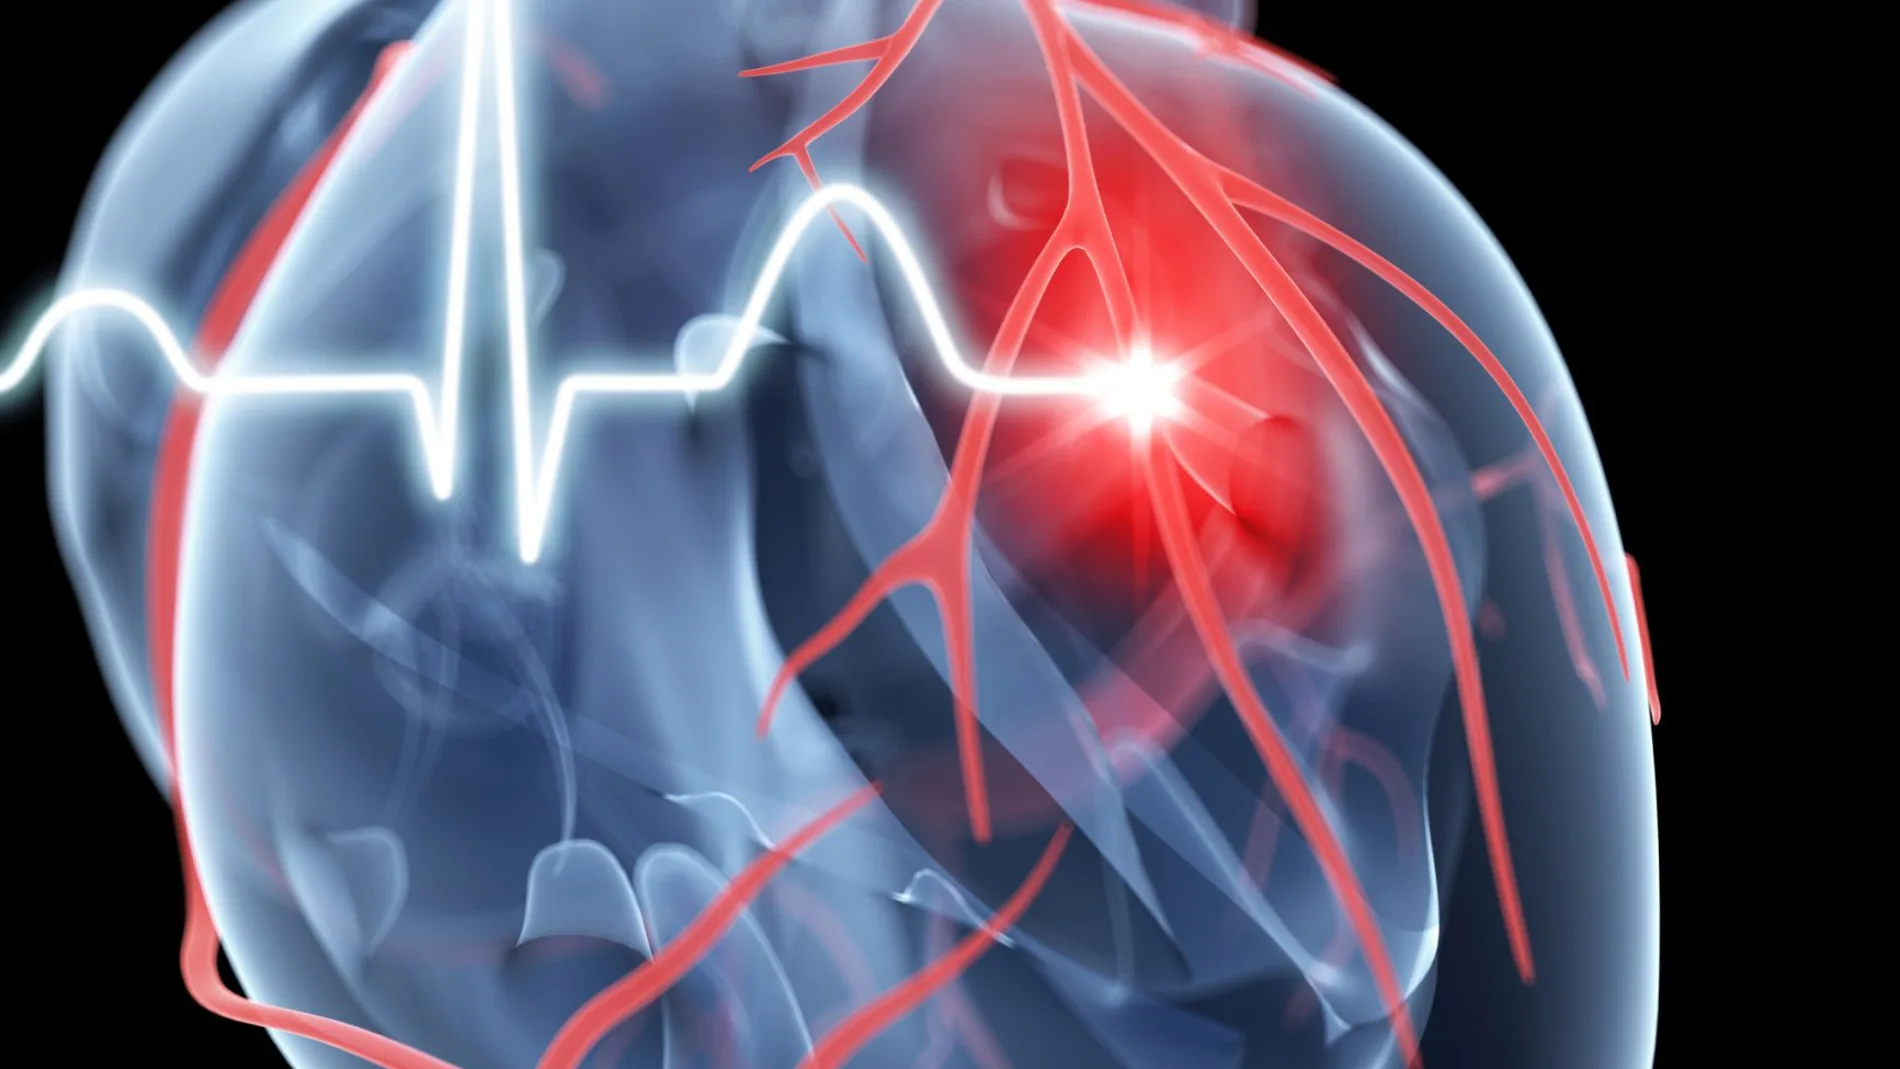 Descubren qué síntoma es peor en caso de infarto: ¿dificultad para respirar o dolor de pecho?